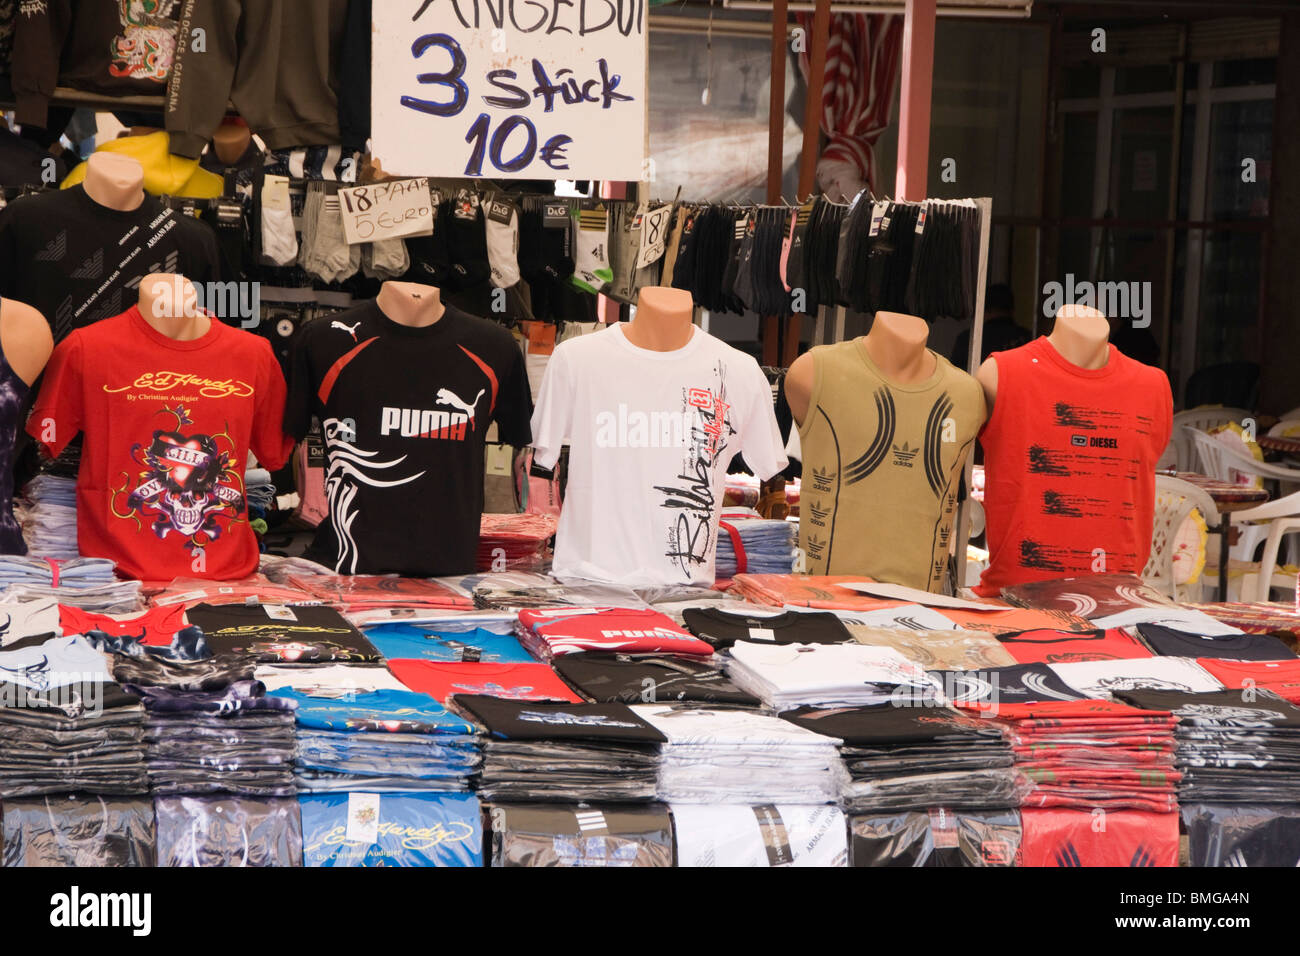 Turquía Manavgat Antalya - Mercado - falso o copian la ropa de marca como Adidas, Puma y Diesel - 3 artículos por 10 euros Foto de stock